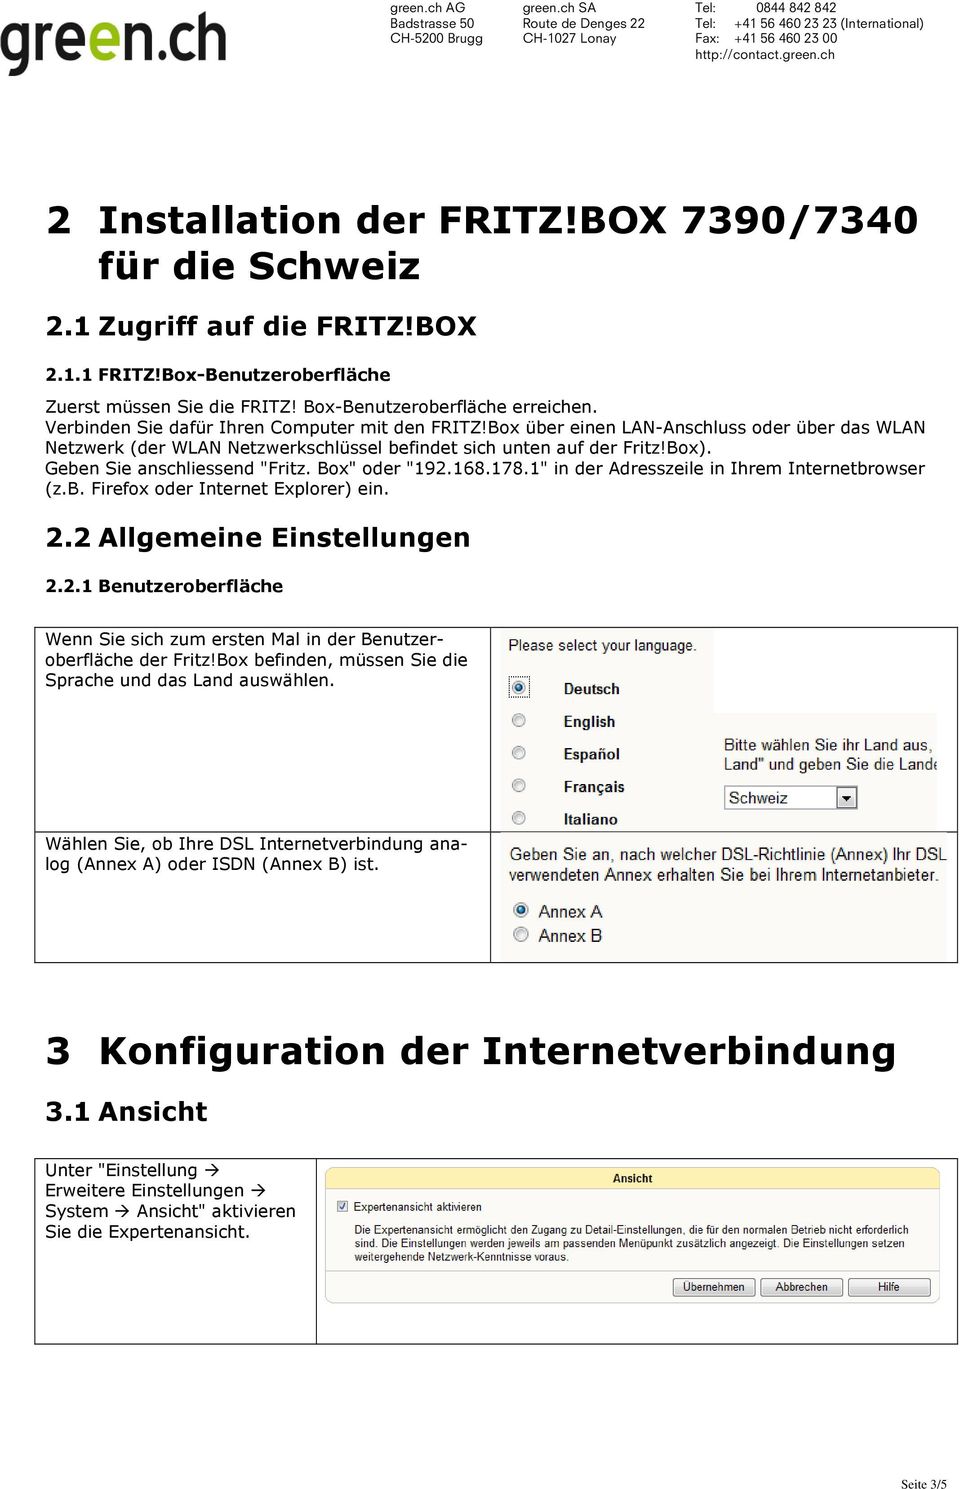 Geben Sie anschliessend "Fritz. Box" oder "192.168.178.1" in der Adresszeile in Ihrem Internetbrowser (z.b. Firefox oder Internet Explorer) ein. 2.2 Allgemeine Einstellungen 2.2.1 Benutzeroberfläche Wenn Sie sich zum ersten Mal in der Benutzeroberfläche der Fritz!